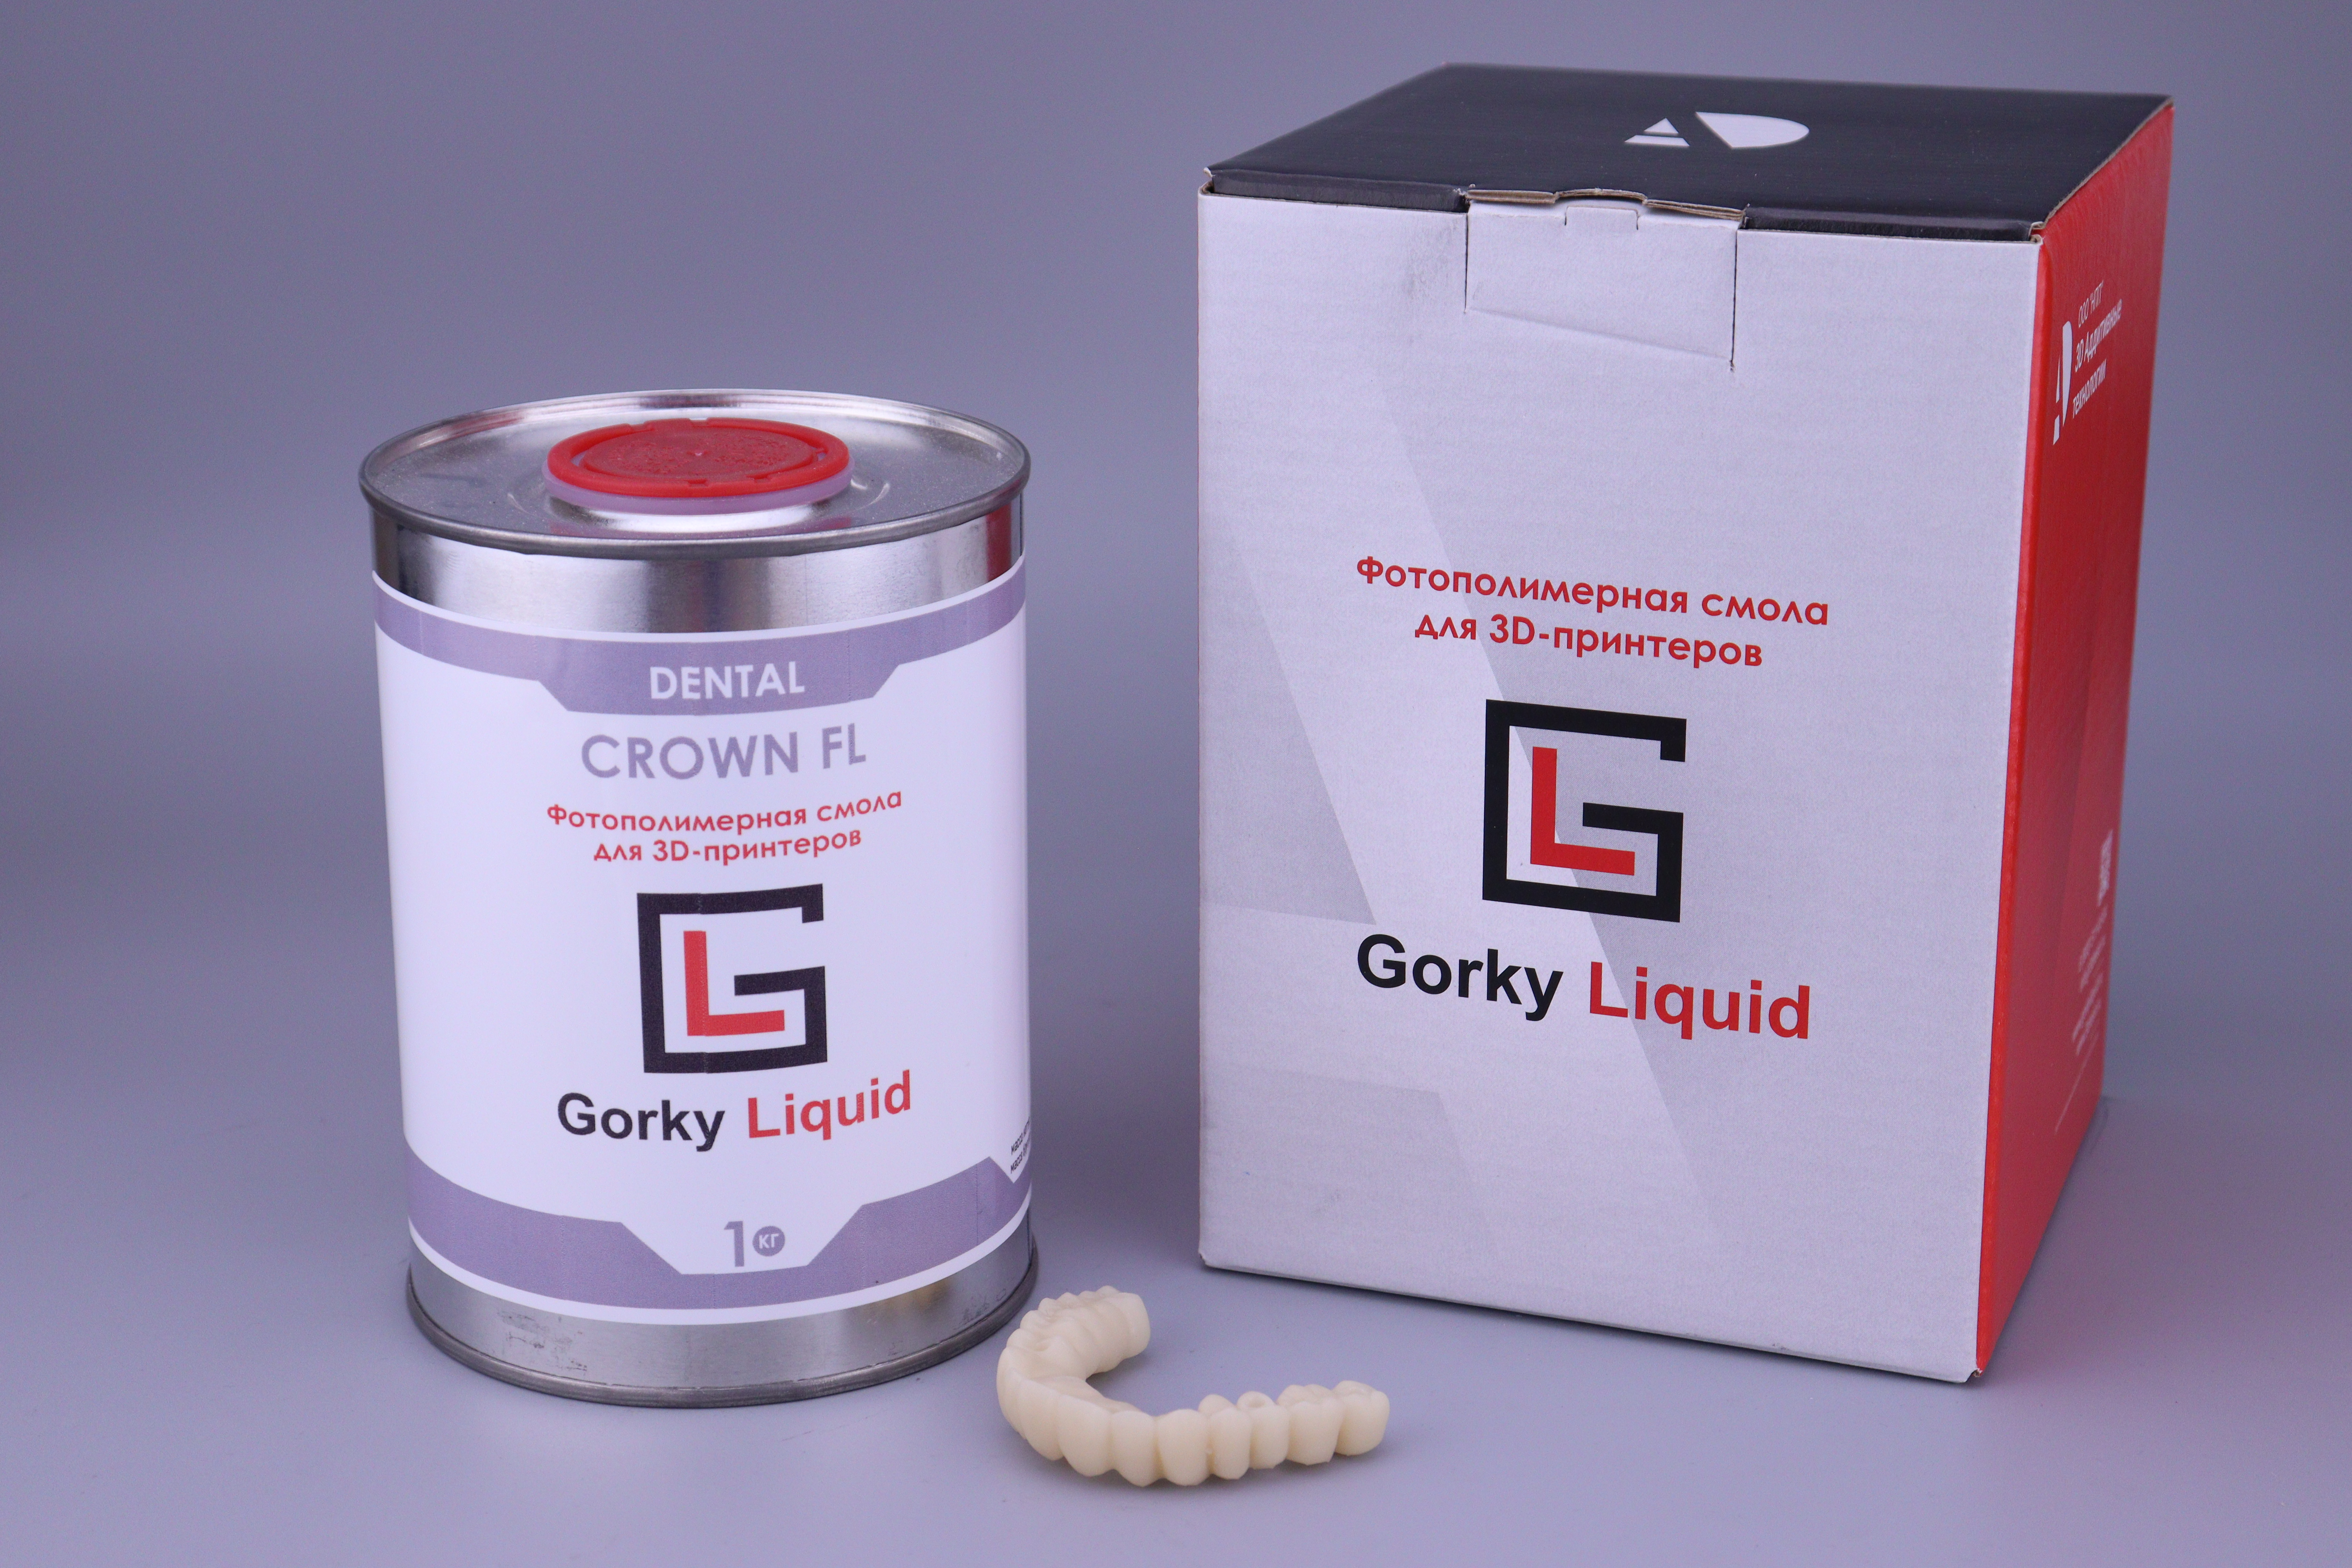 "Dental Crown" A2 FL 1 кг фотополимерная смола Gorky Liquid